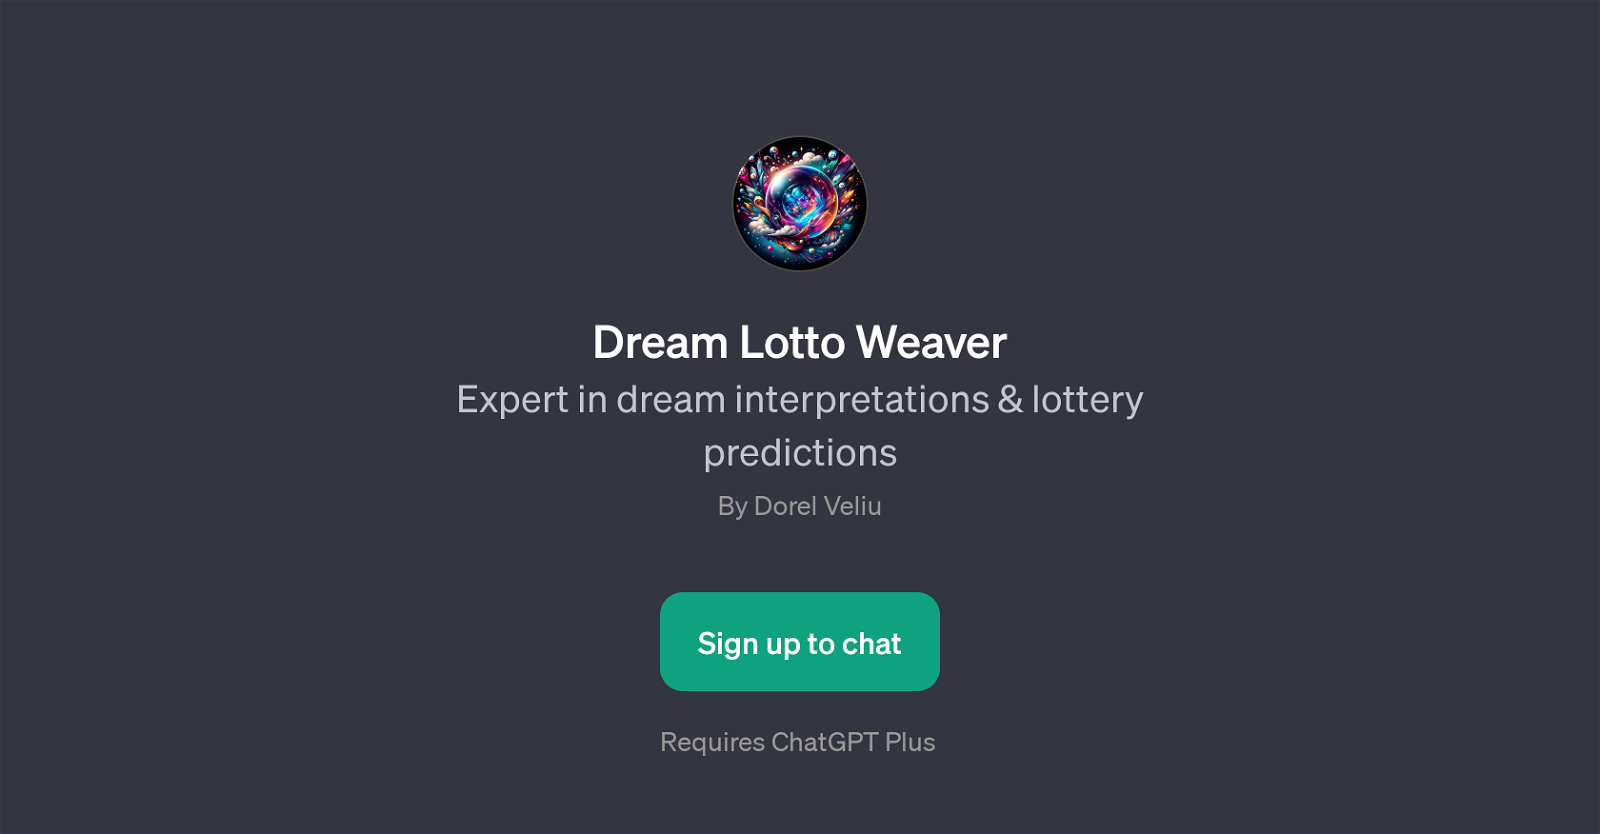 Dream Lotto Weaver website